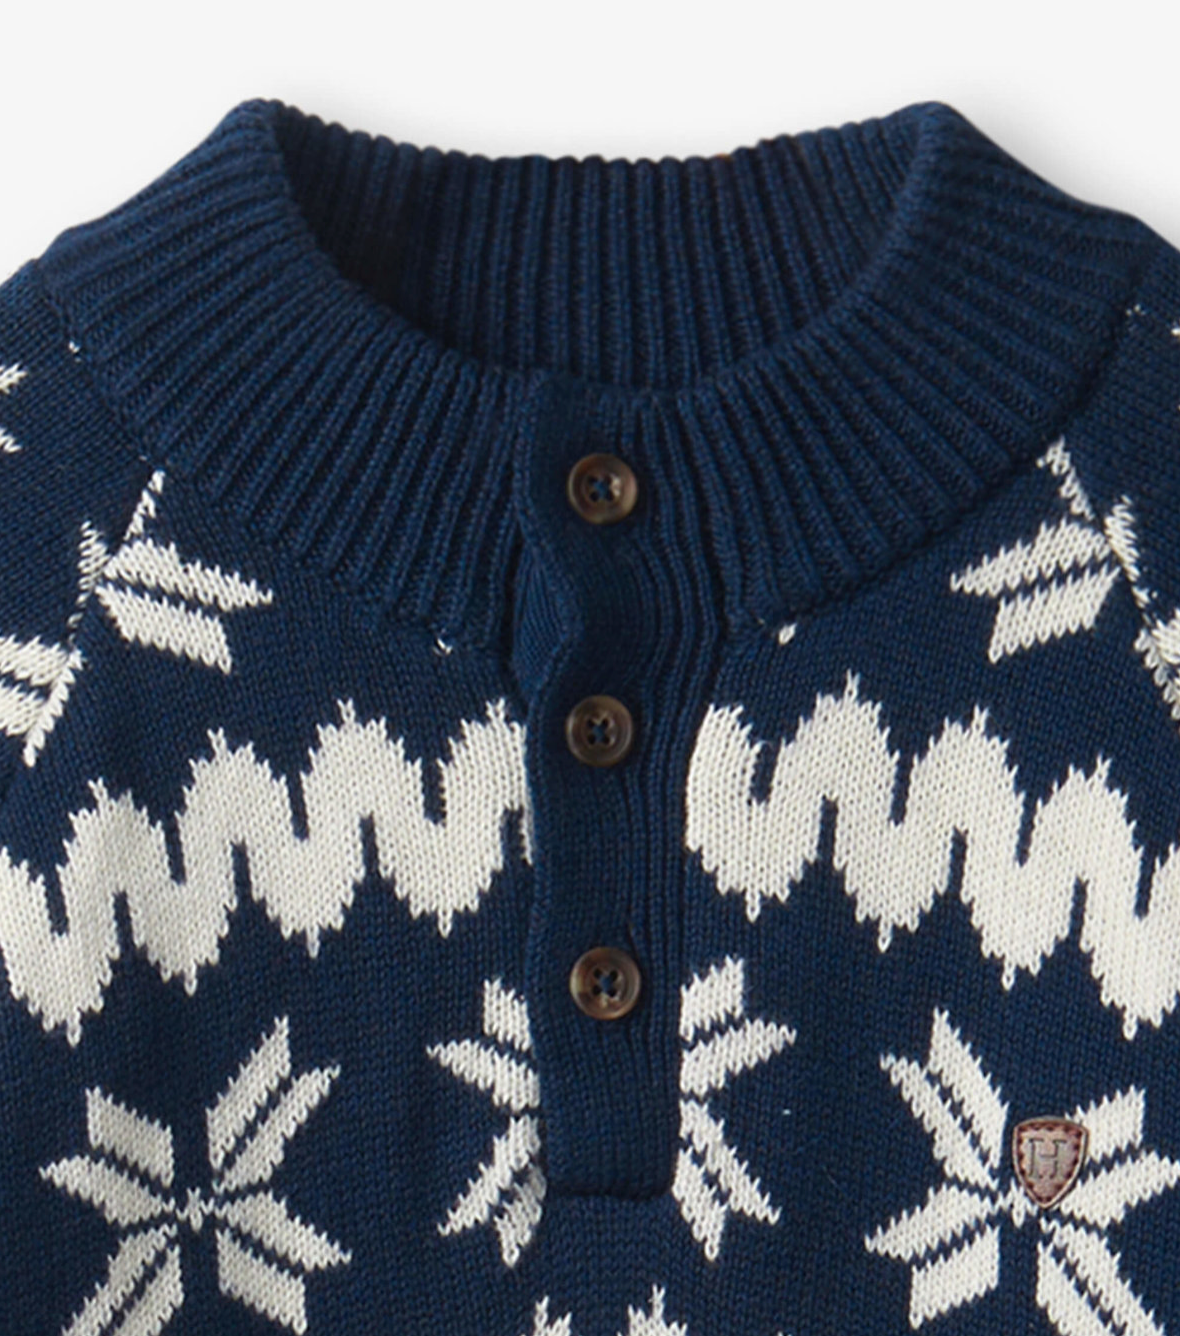 Winter Knit Mock Neck Sweater